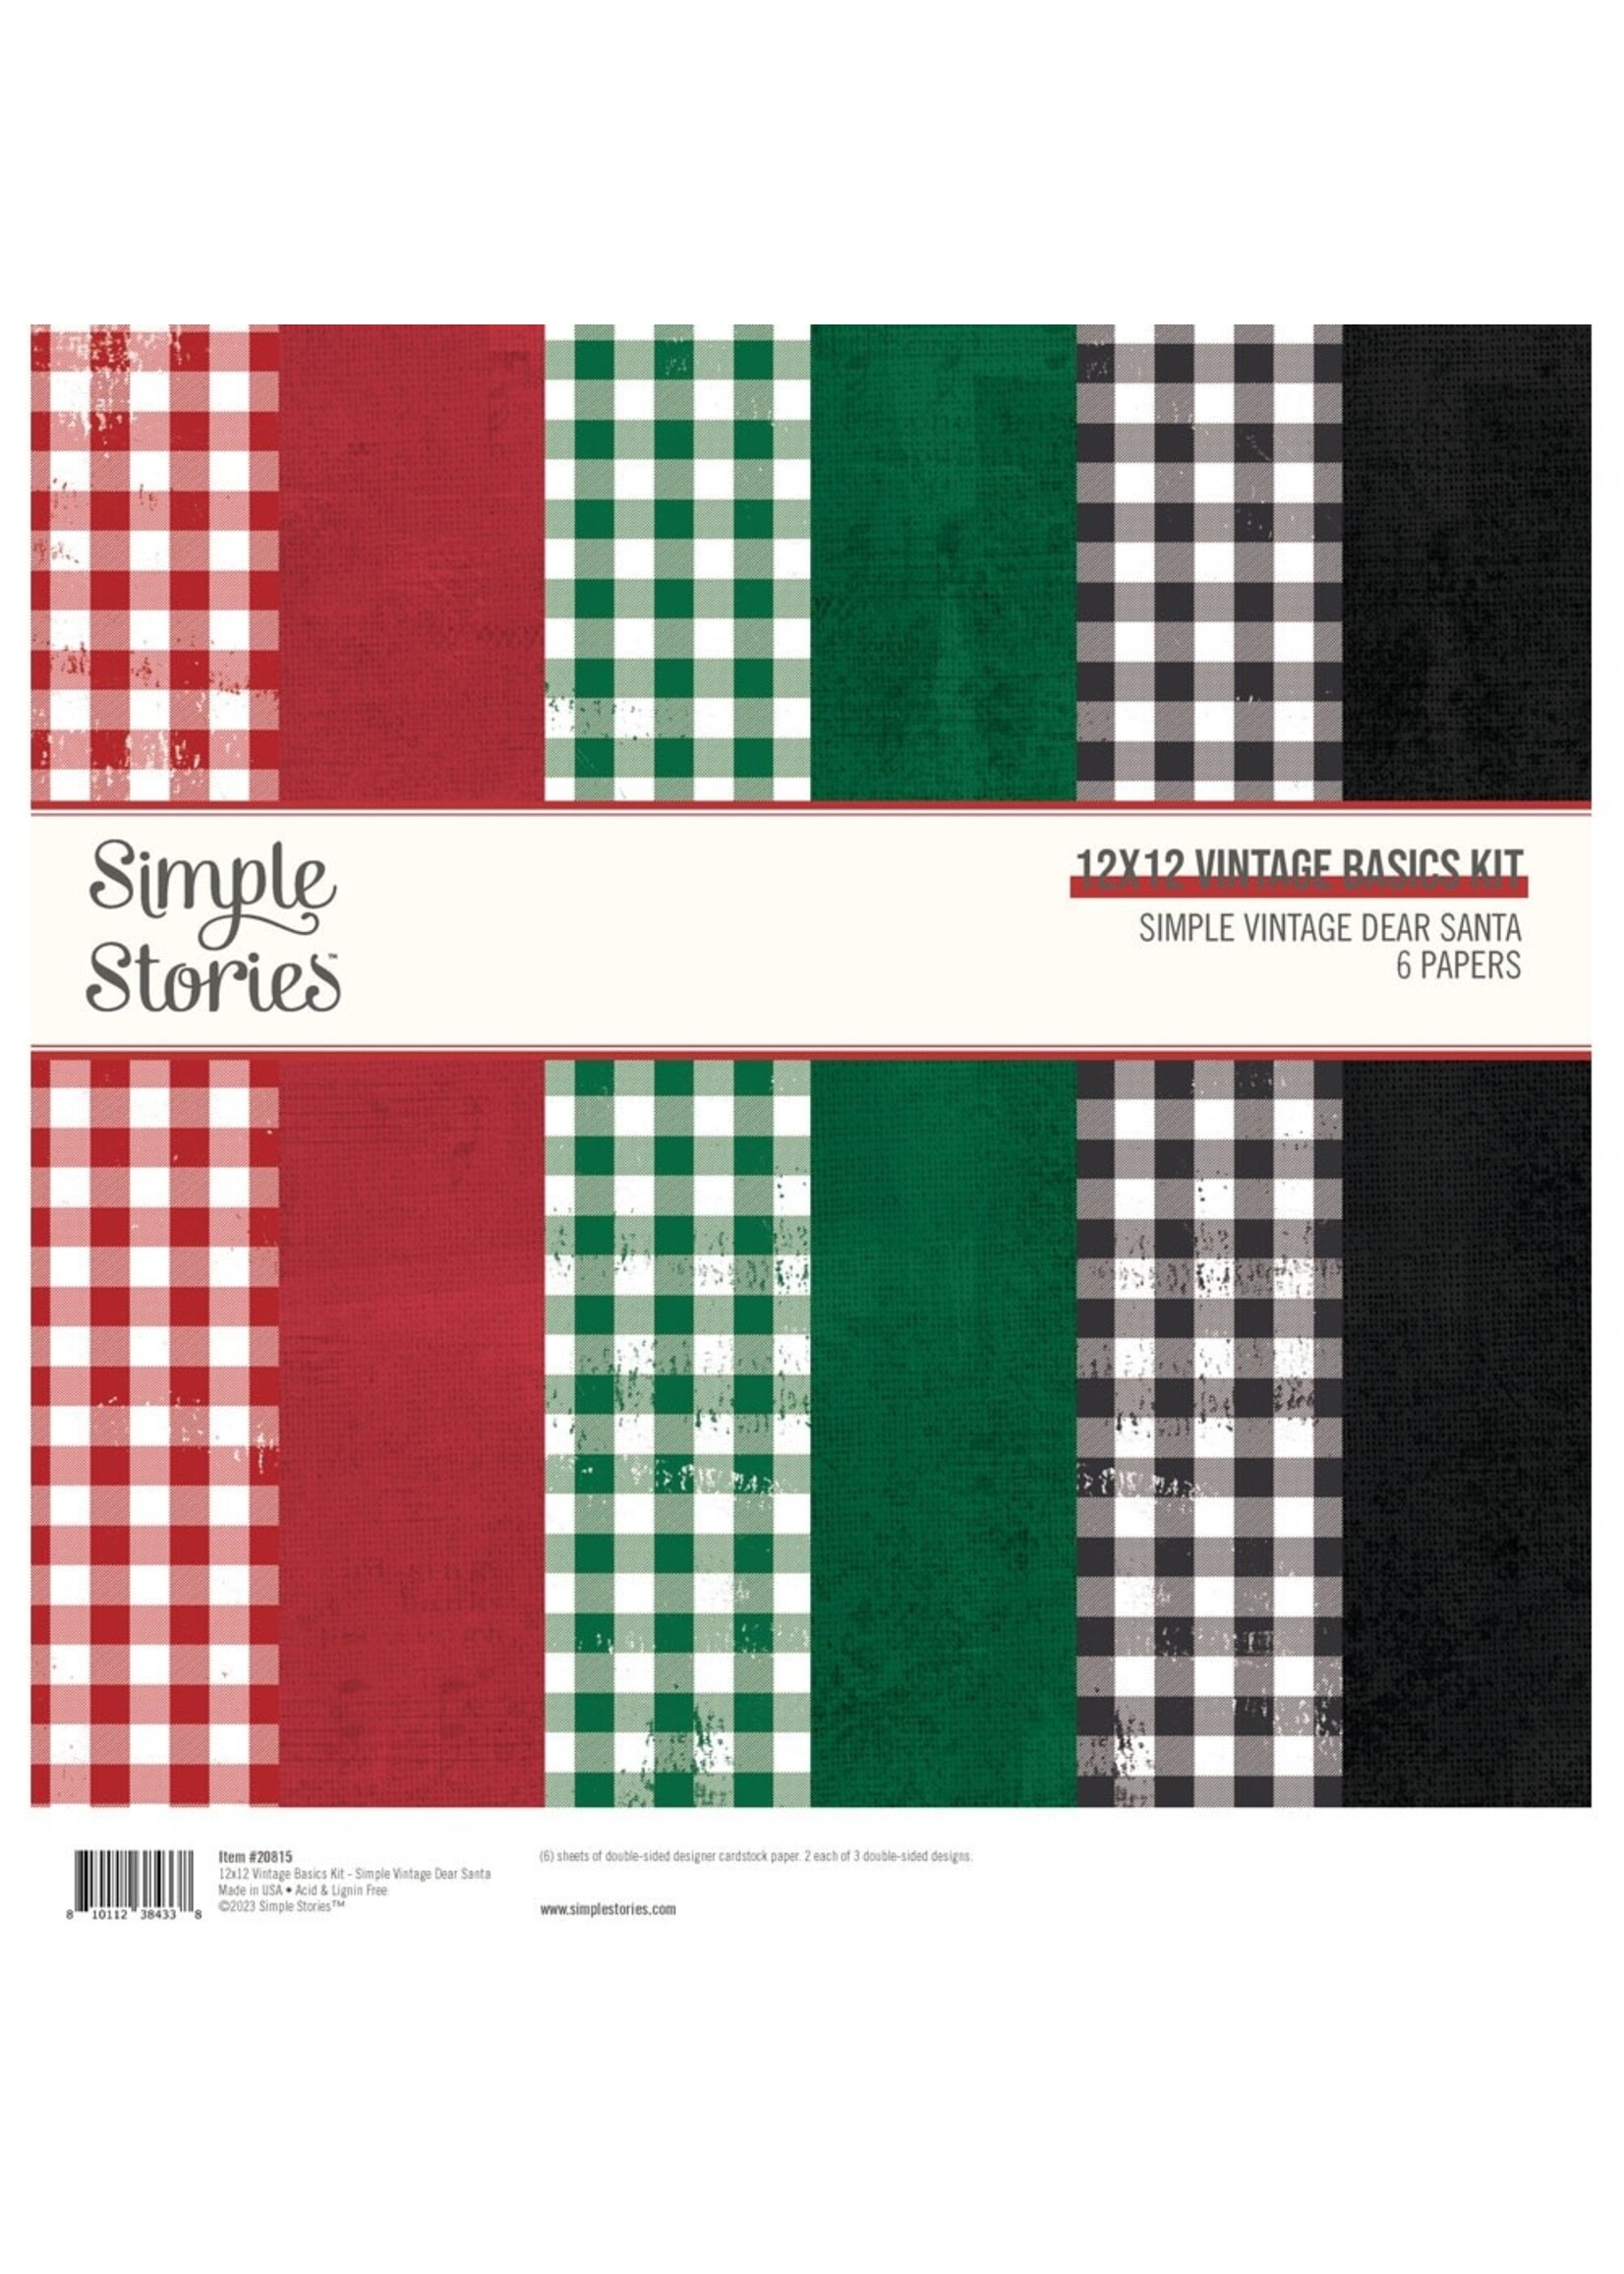 Simple Stories Simple Vintage Dear Santa Cardstock Pack 12x12